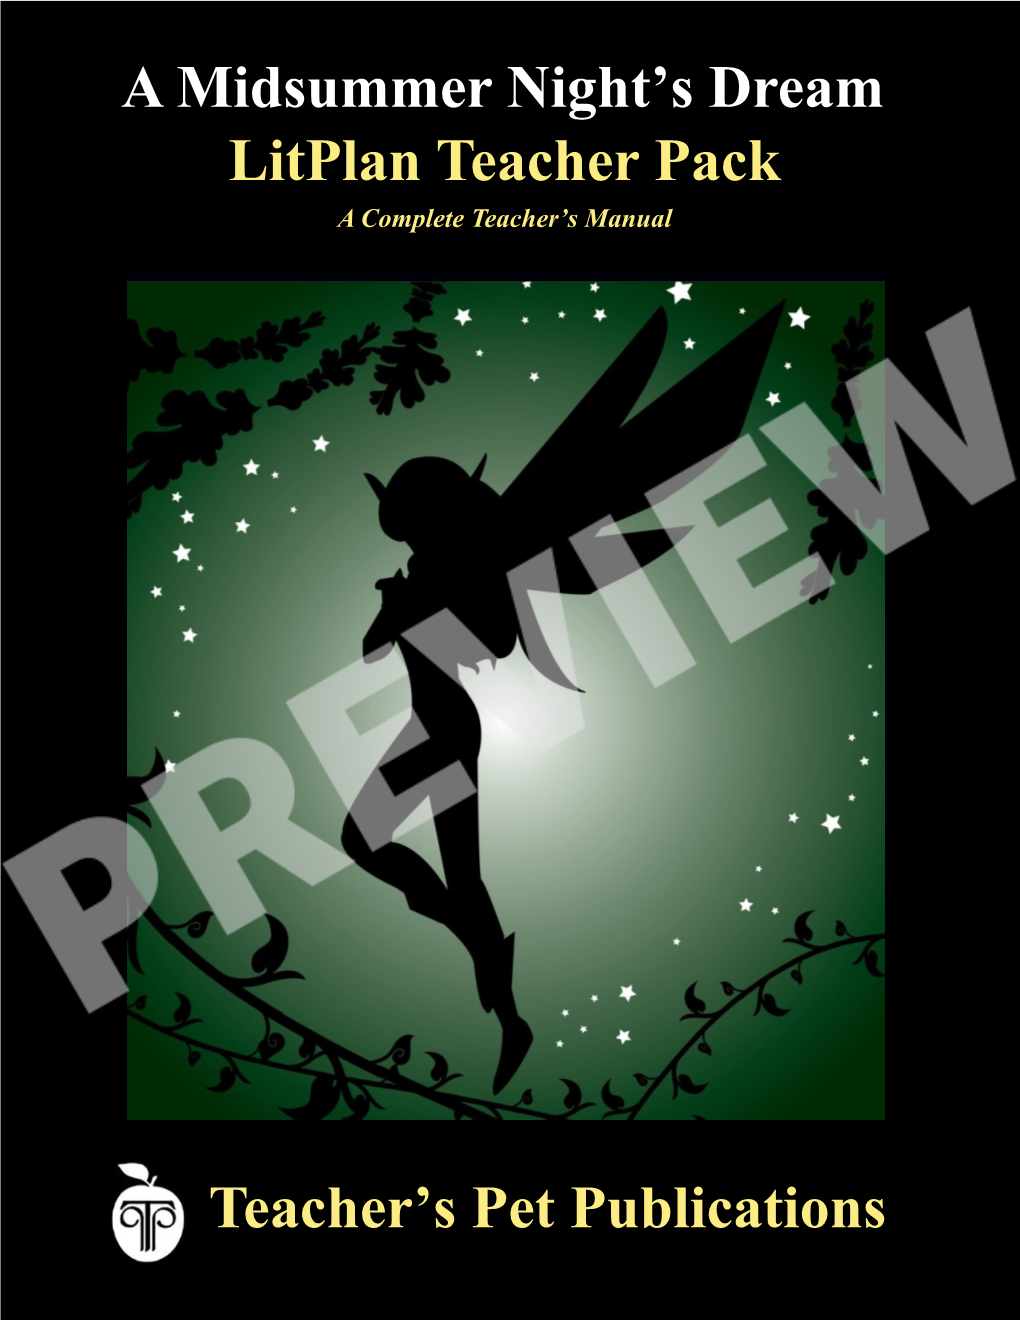 Litplan Teacher Pack Teacher's Pet Publications a Midsummer